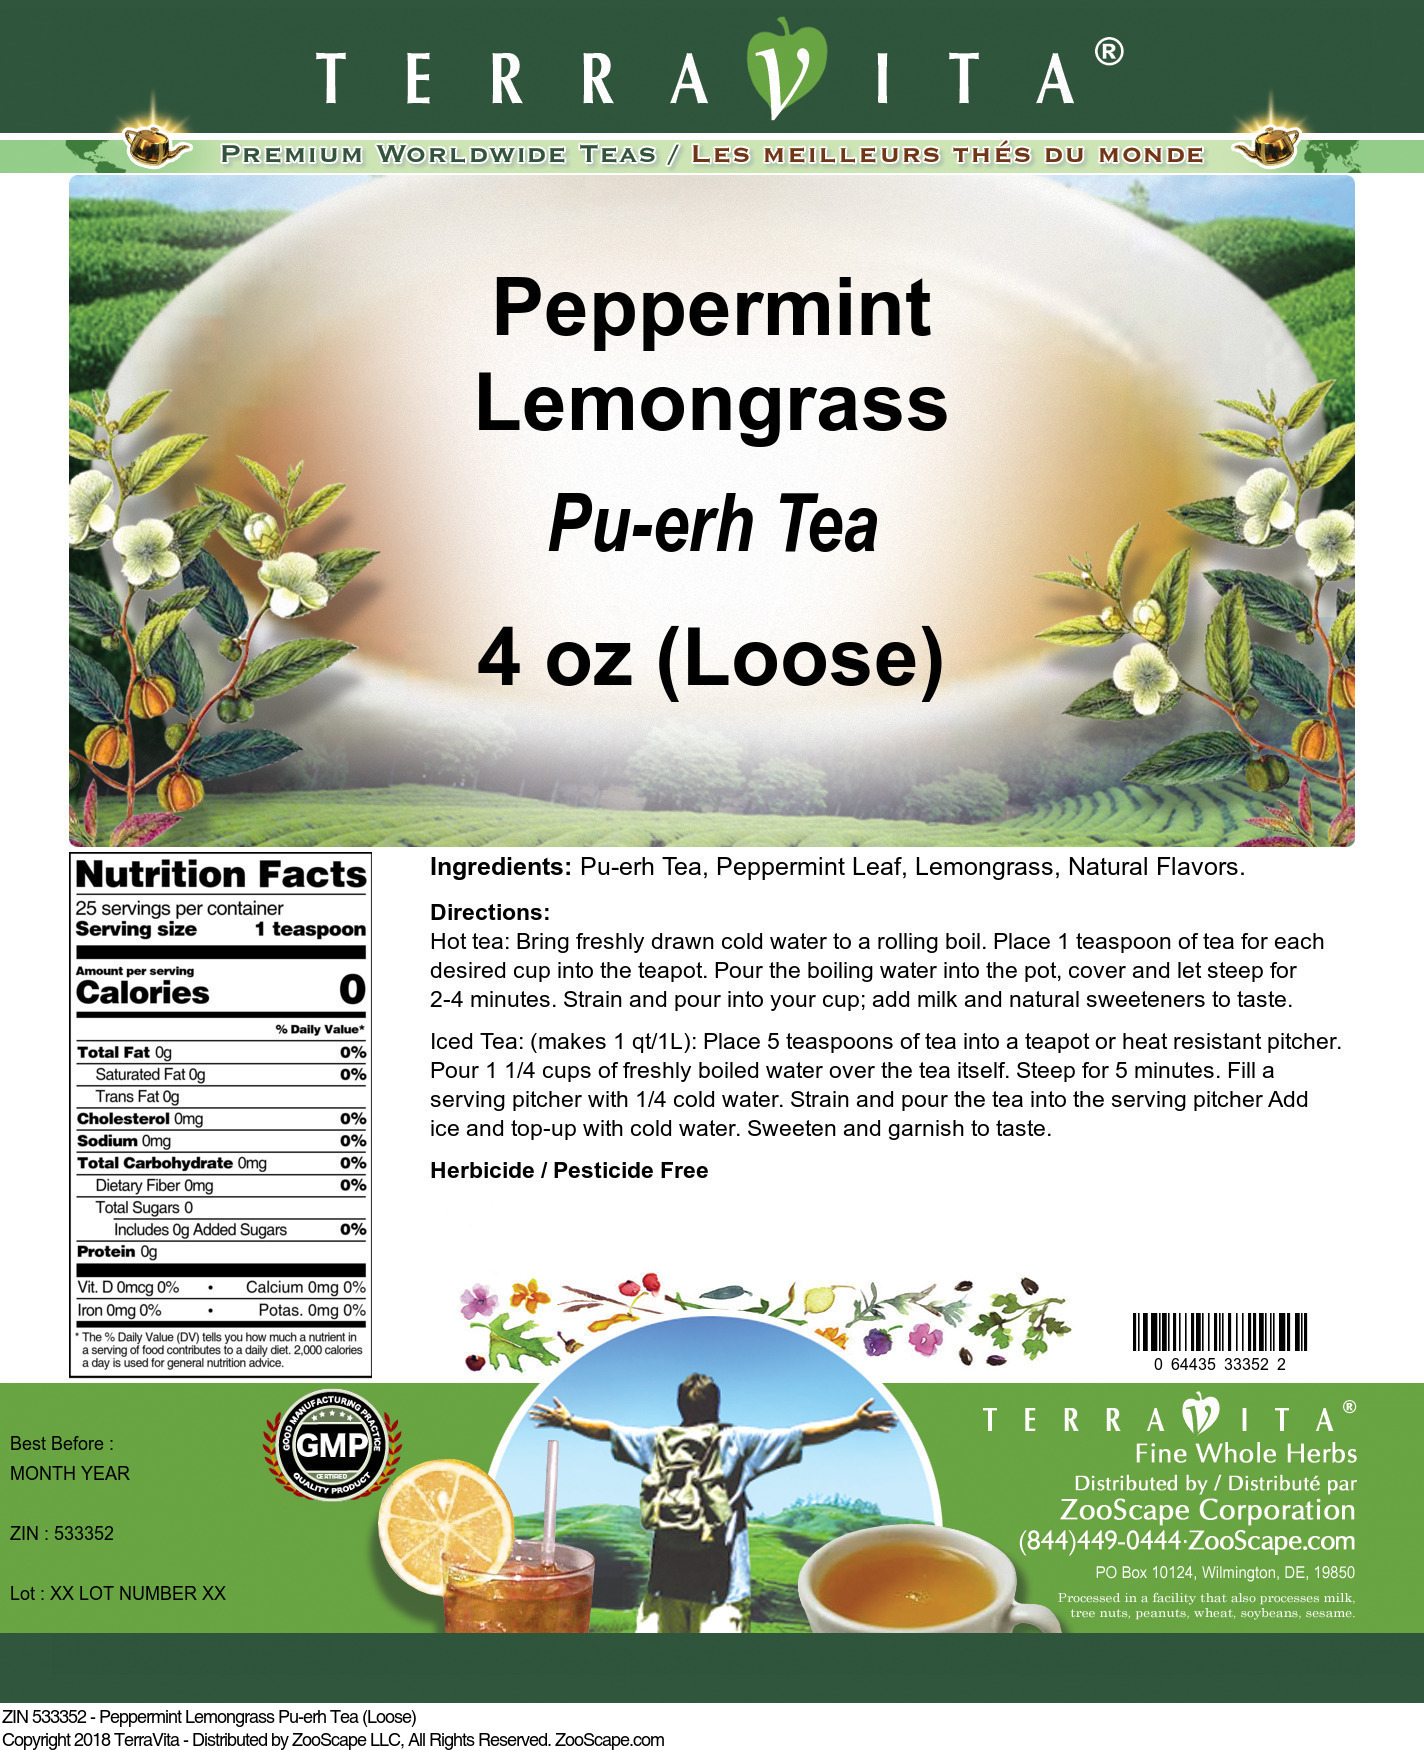 Peppermint Lemongrass Pu-erh Tea (Loose) - Label